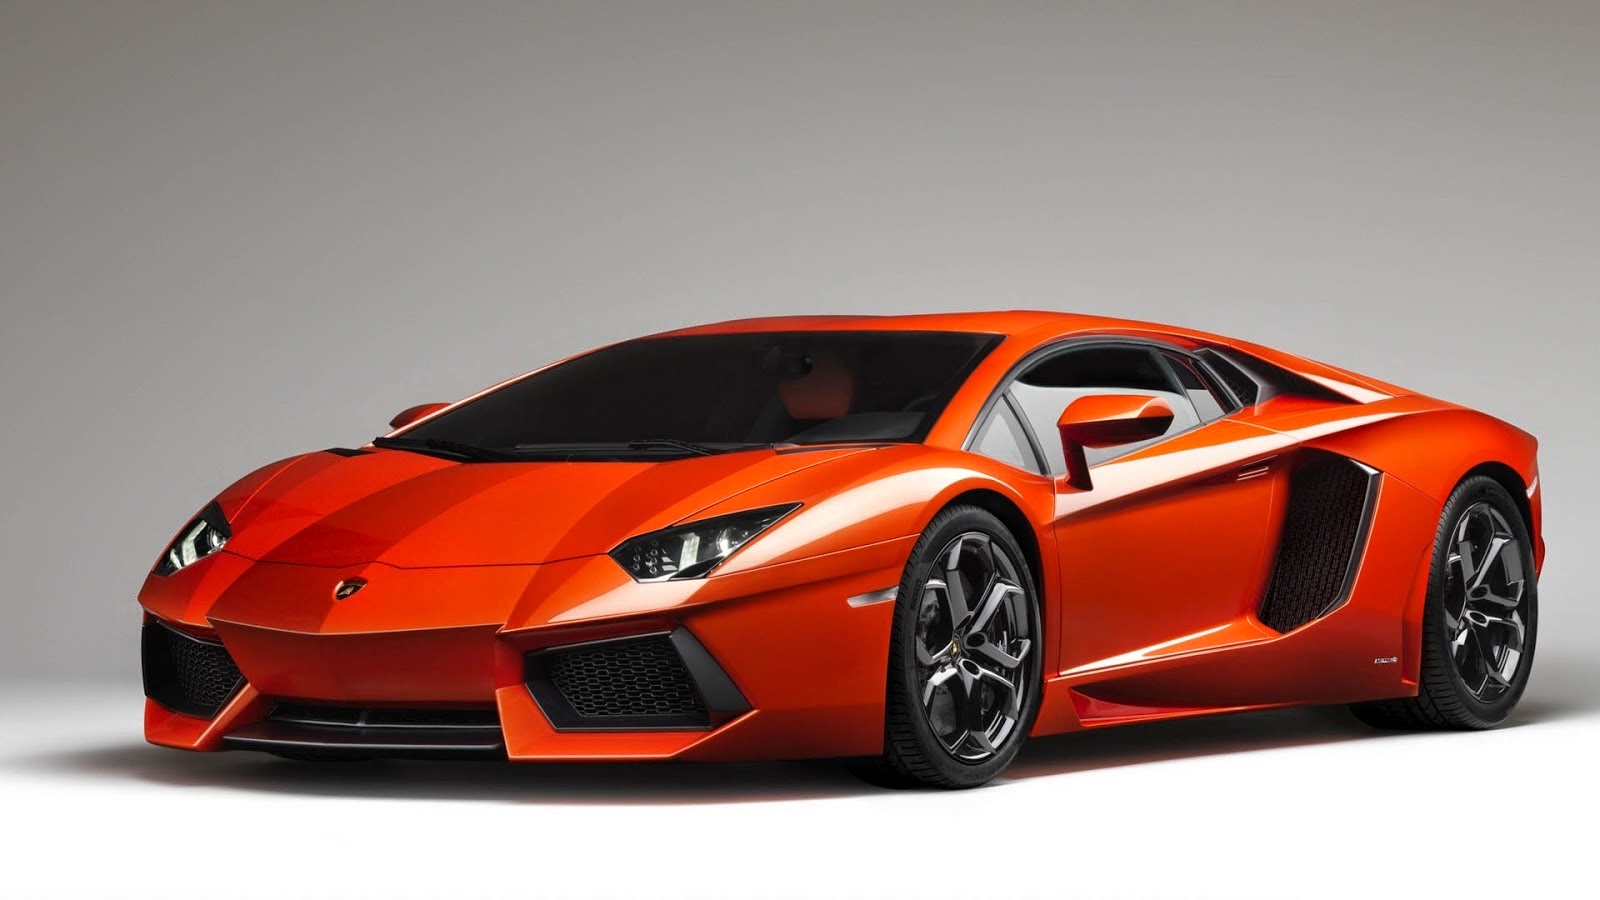 Kumpulan Foto Mobil Lamborghini Super Keren Terbaru Modif Motor Mobil